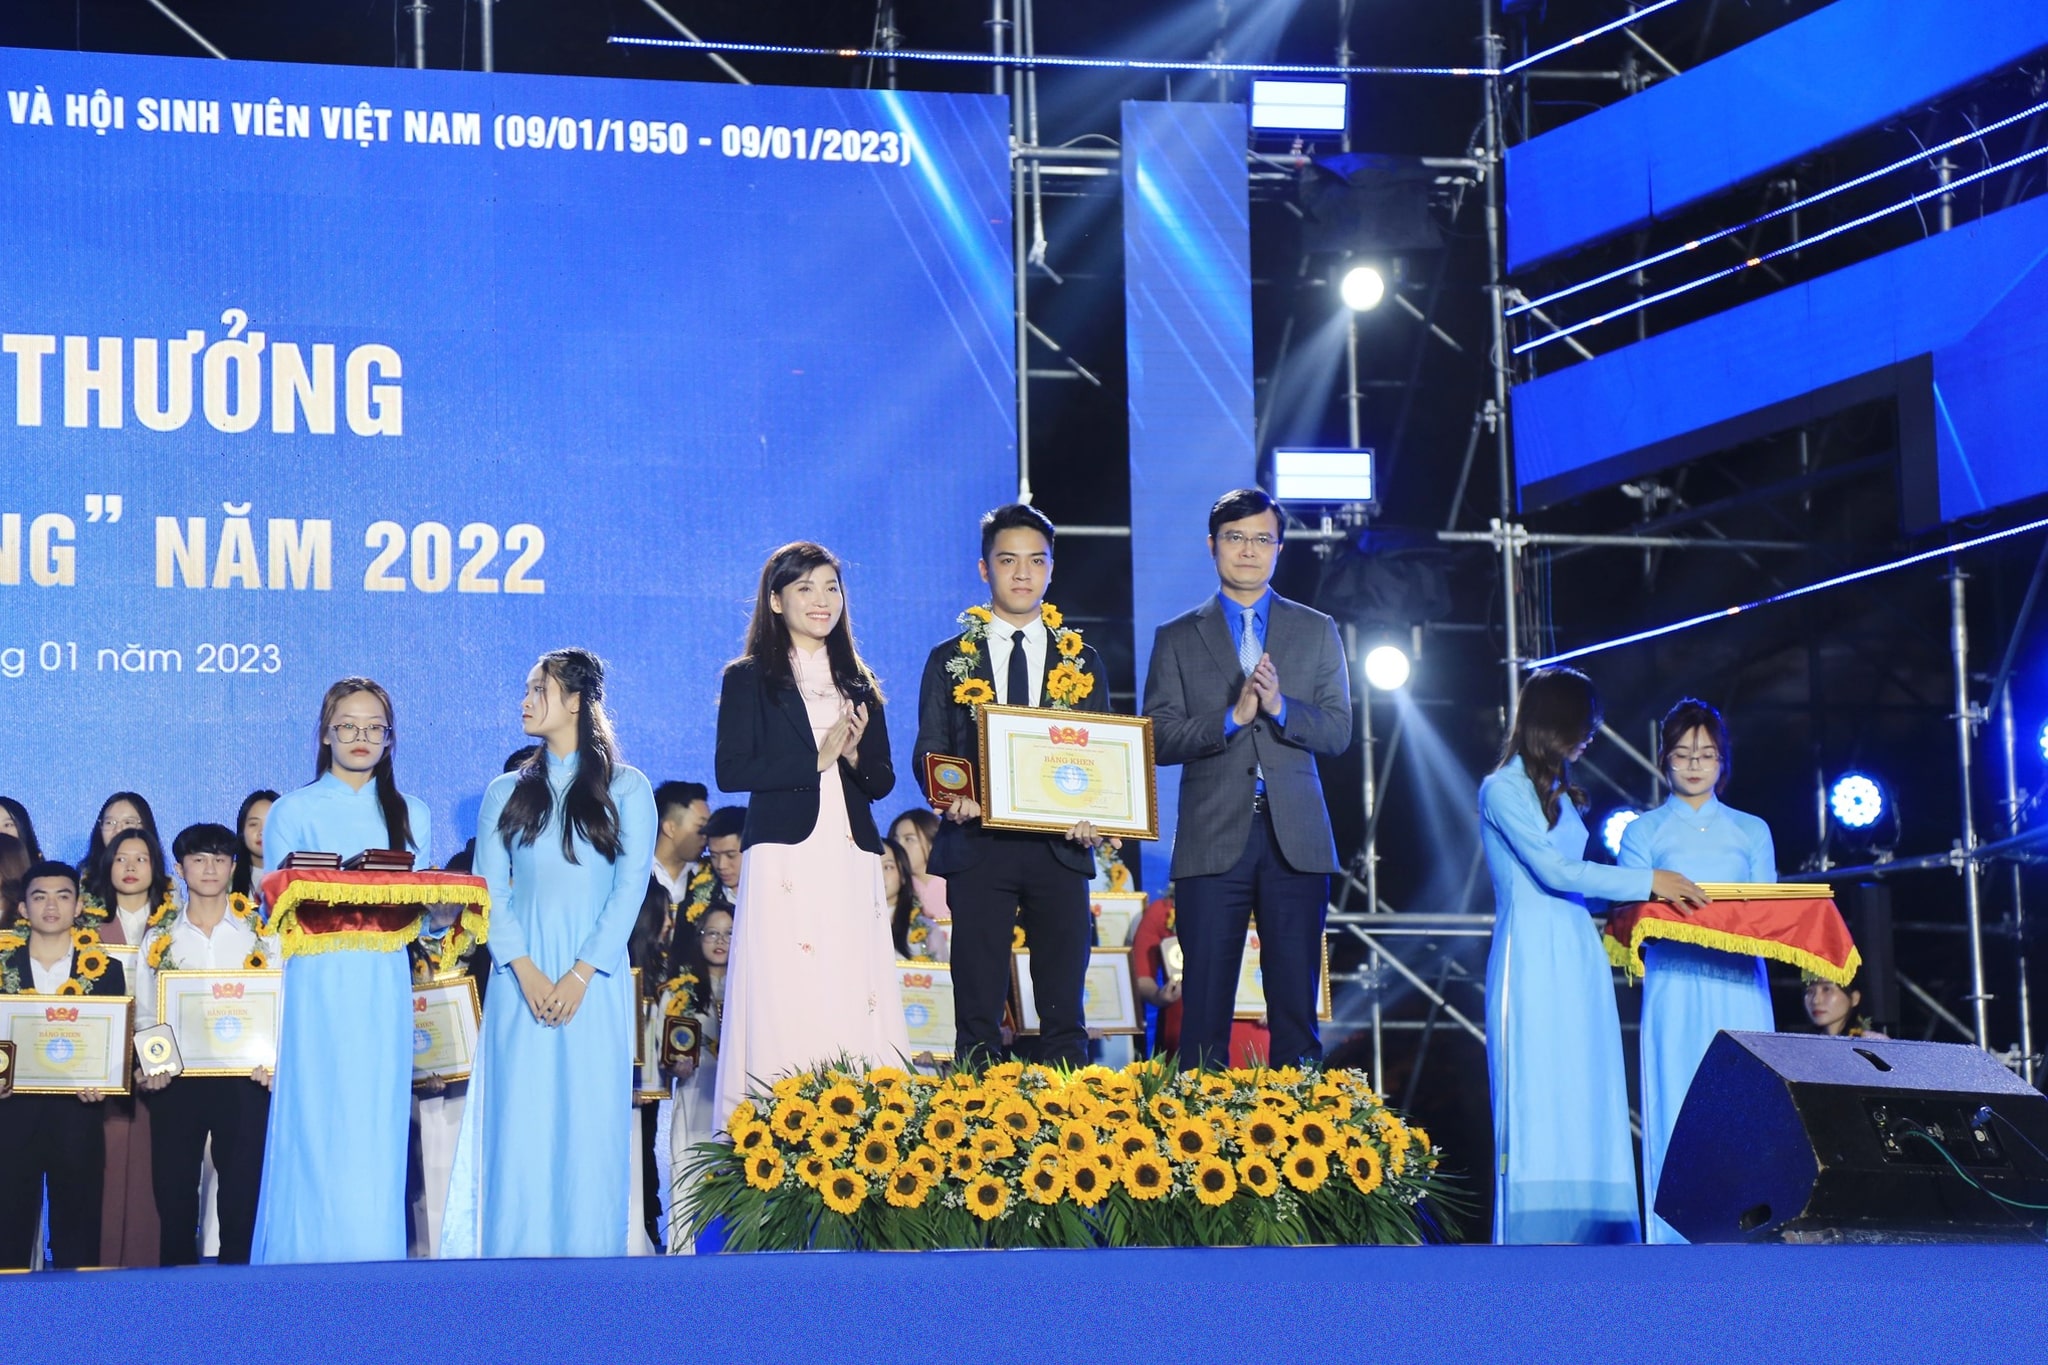 Sinh viên DAU được Trung ương Hội sinh viên trao tặng giải thưởng Sao tháng Giêng